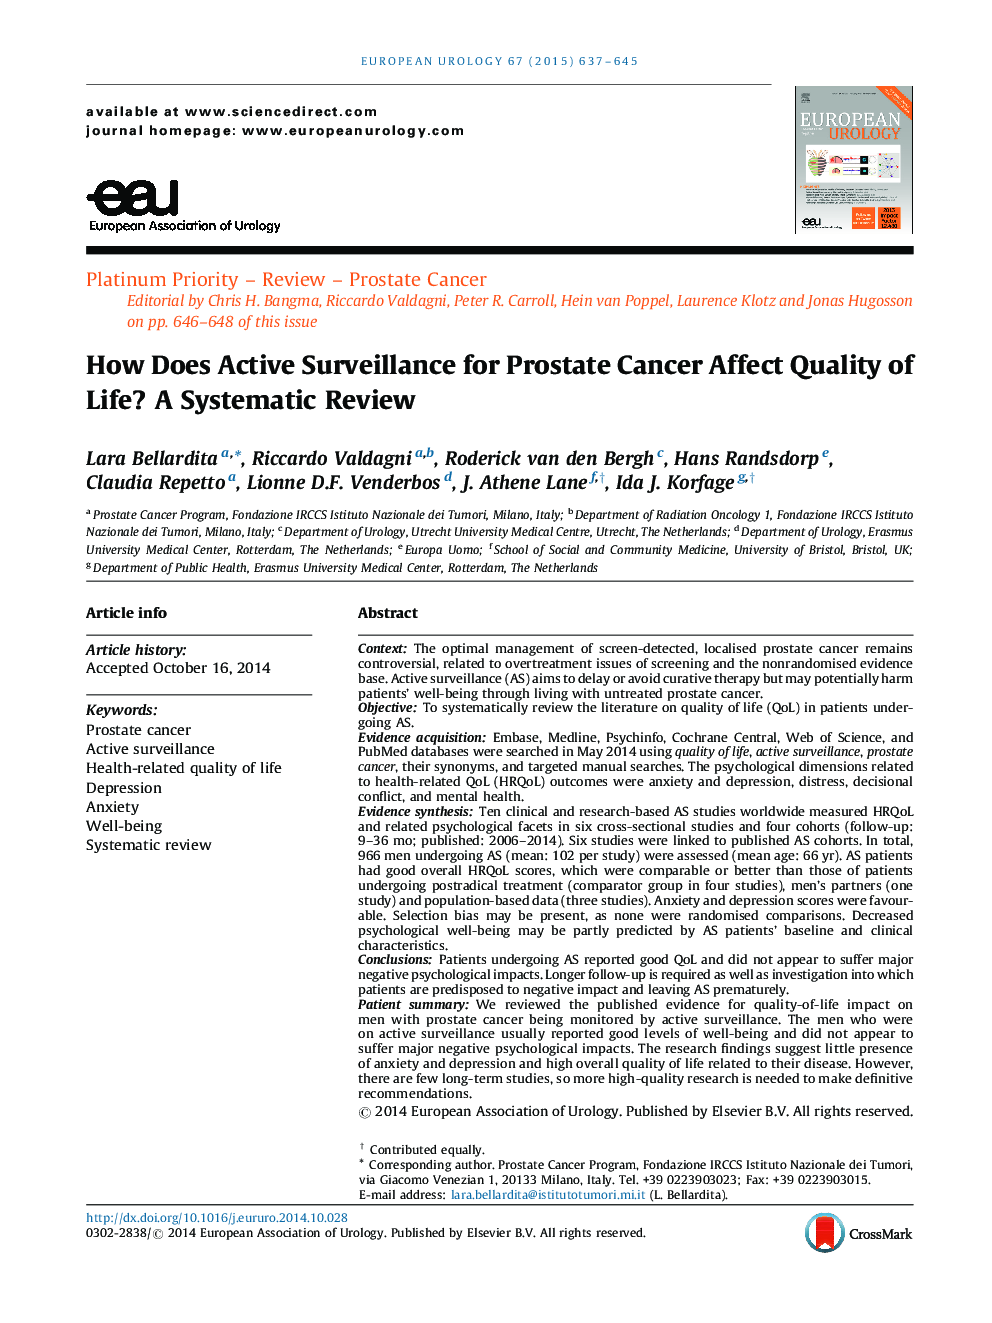 چگونه نظارت فعال برای سرطان پروستات بر کیفیت زندگی تأثیر می گذارد؟ بررسی سیستماتیک 